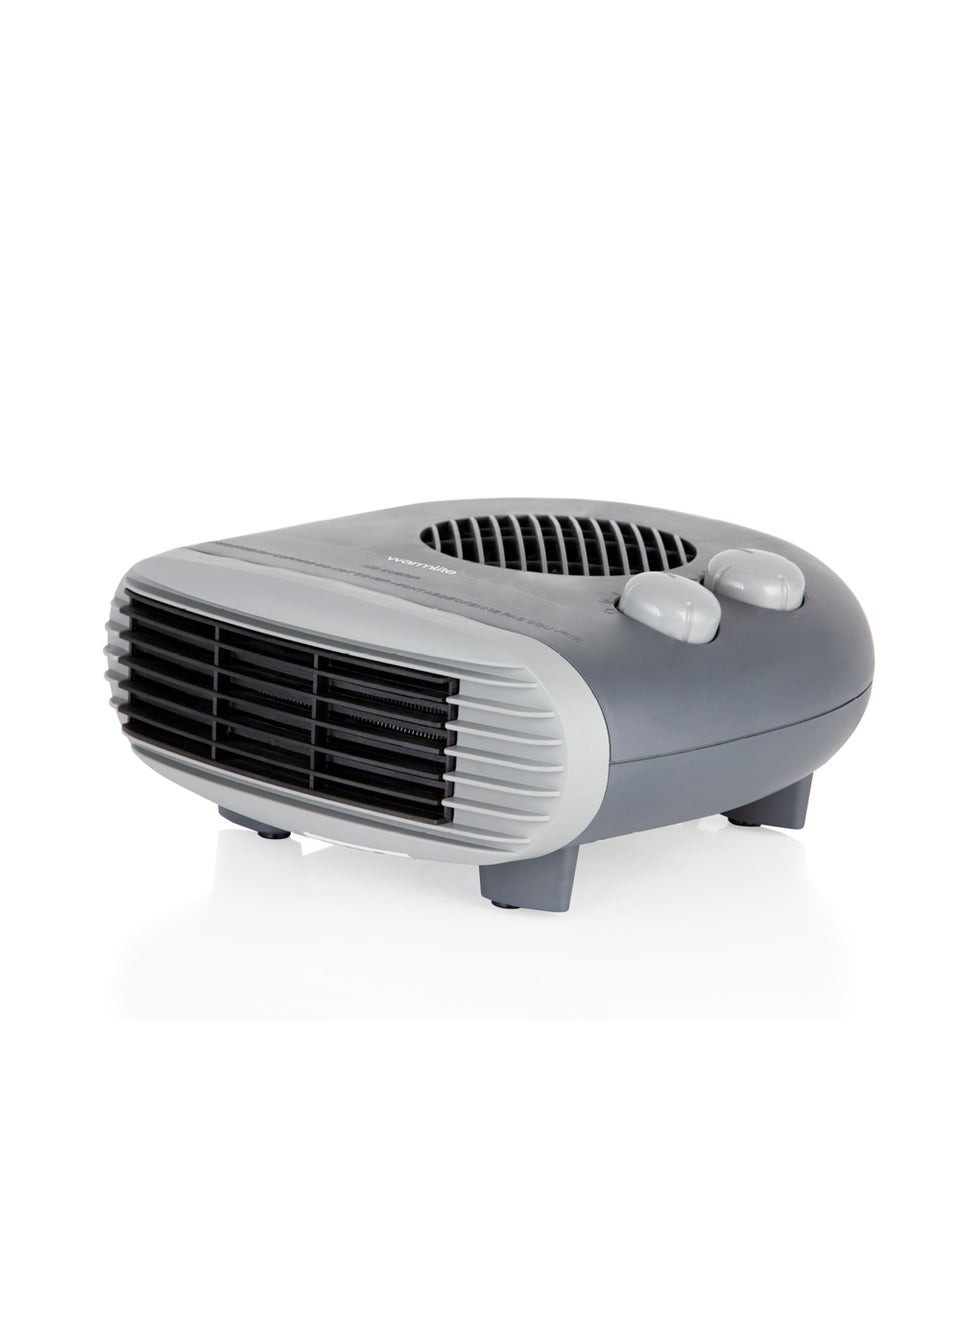 Warmlite 1000W/2000W Flat Fan Heater